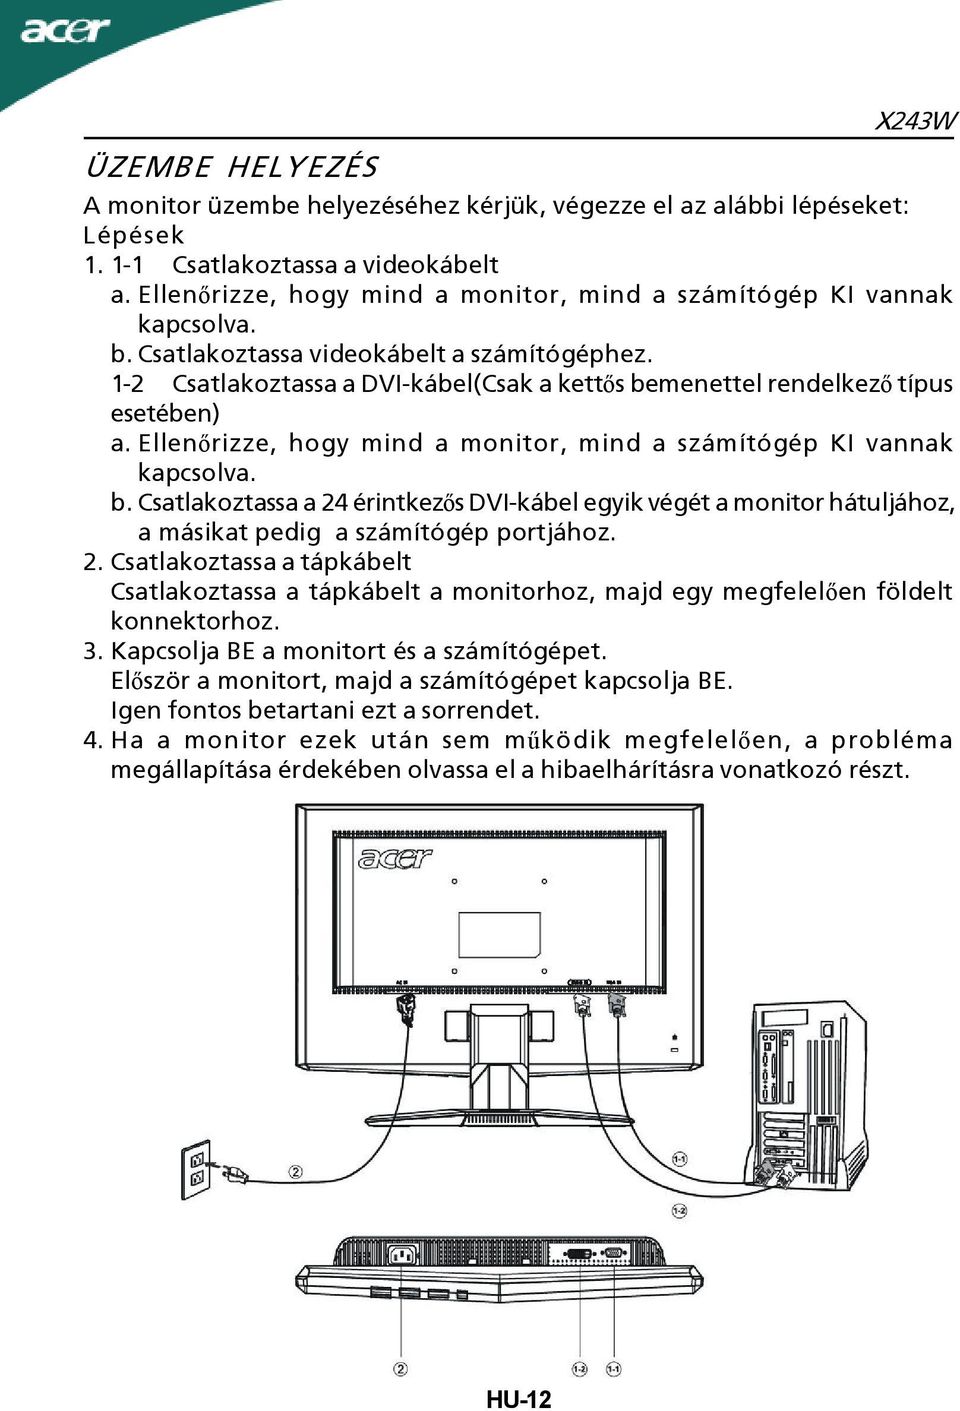 1-2 Csatlakoztassa a DVI-kábel(Csak a kettős bemenettel rendelkező típus esetében) a. Ellenőrizze, hogy mind a monitor, mind a számítógép KI vannak kapcsolva. b.csatlakoztassa a 24 érintkezős DVI-kábel egyik végét a monitor hátuljához, a másikat pedig a számítógép portjához.